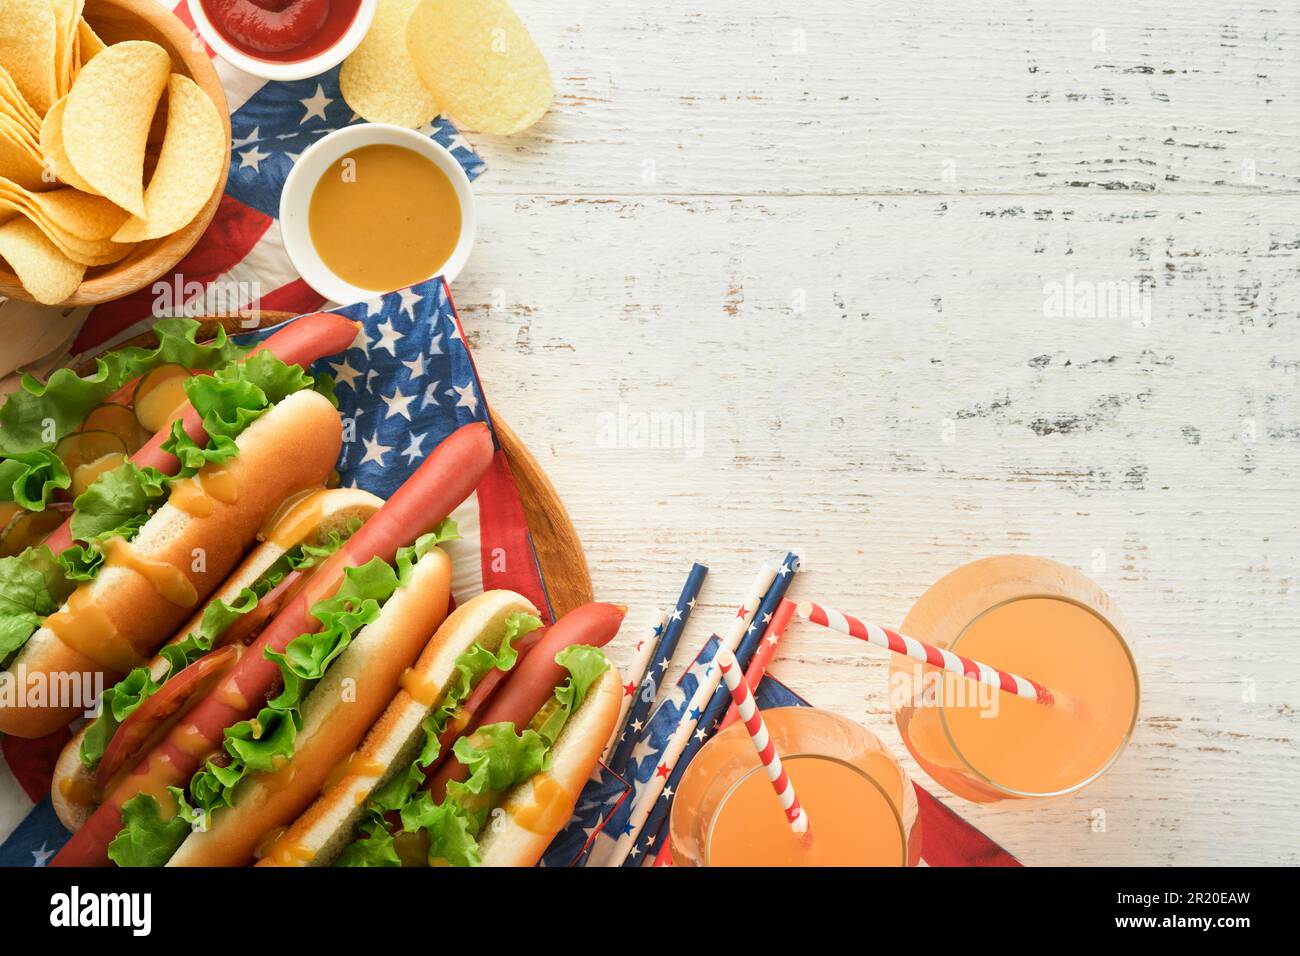 4th de juillet American Independence Day cuisine traditionnelle de pique-nique. Hot dog avec chips de pomme de terre et cocktail, drapeaux américains et symboles de USA Patriotic pi Banque D'Images